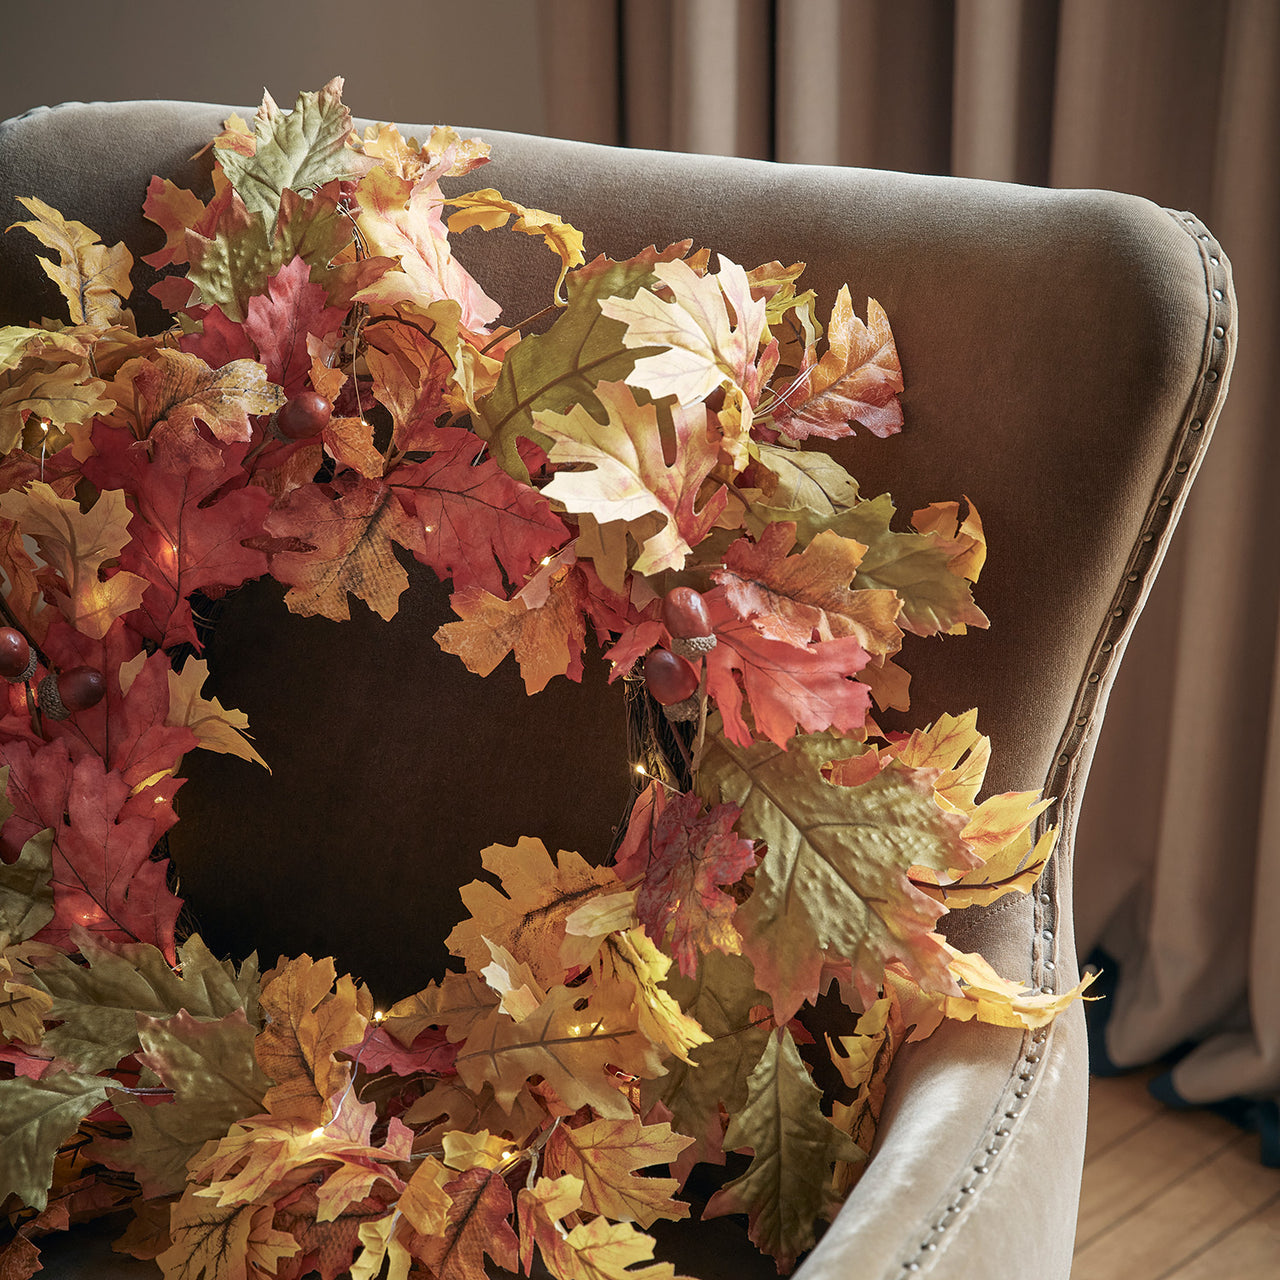 50cm Oak Leaf Autumn Wreath